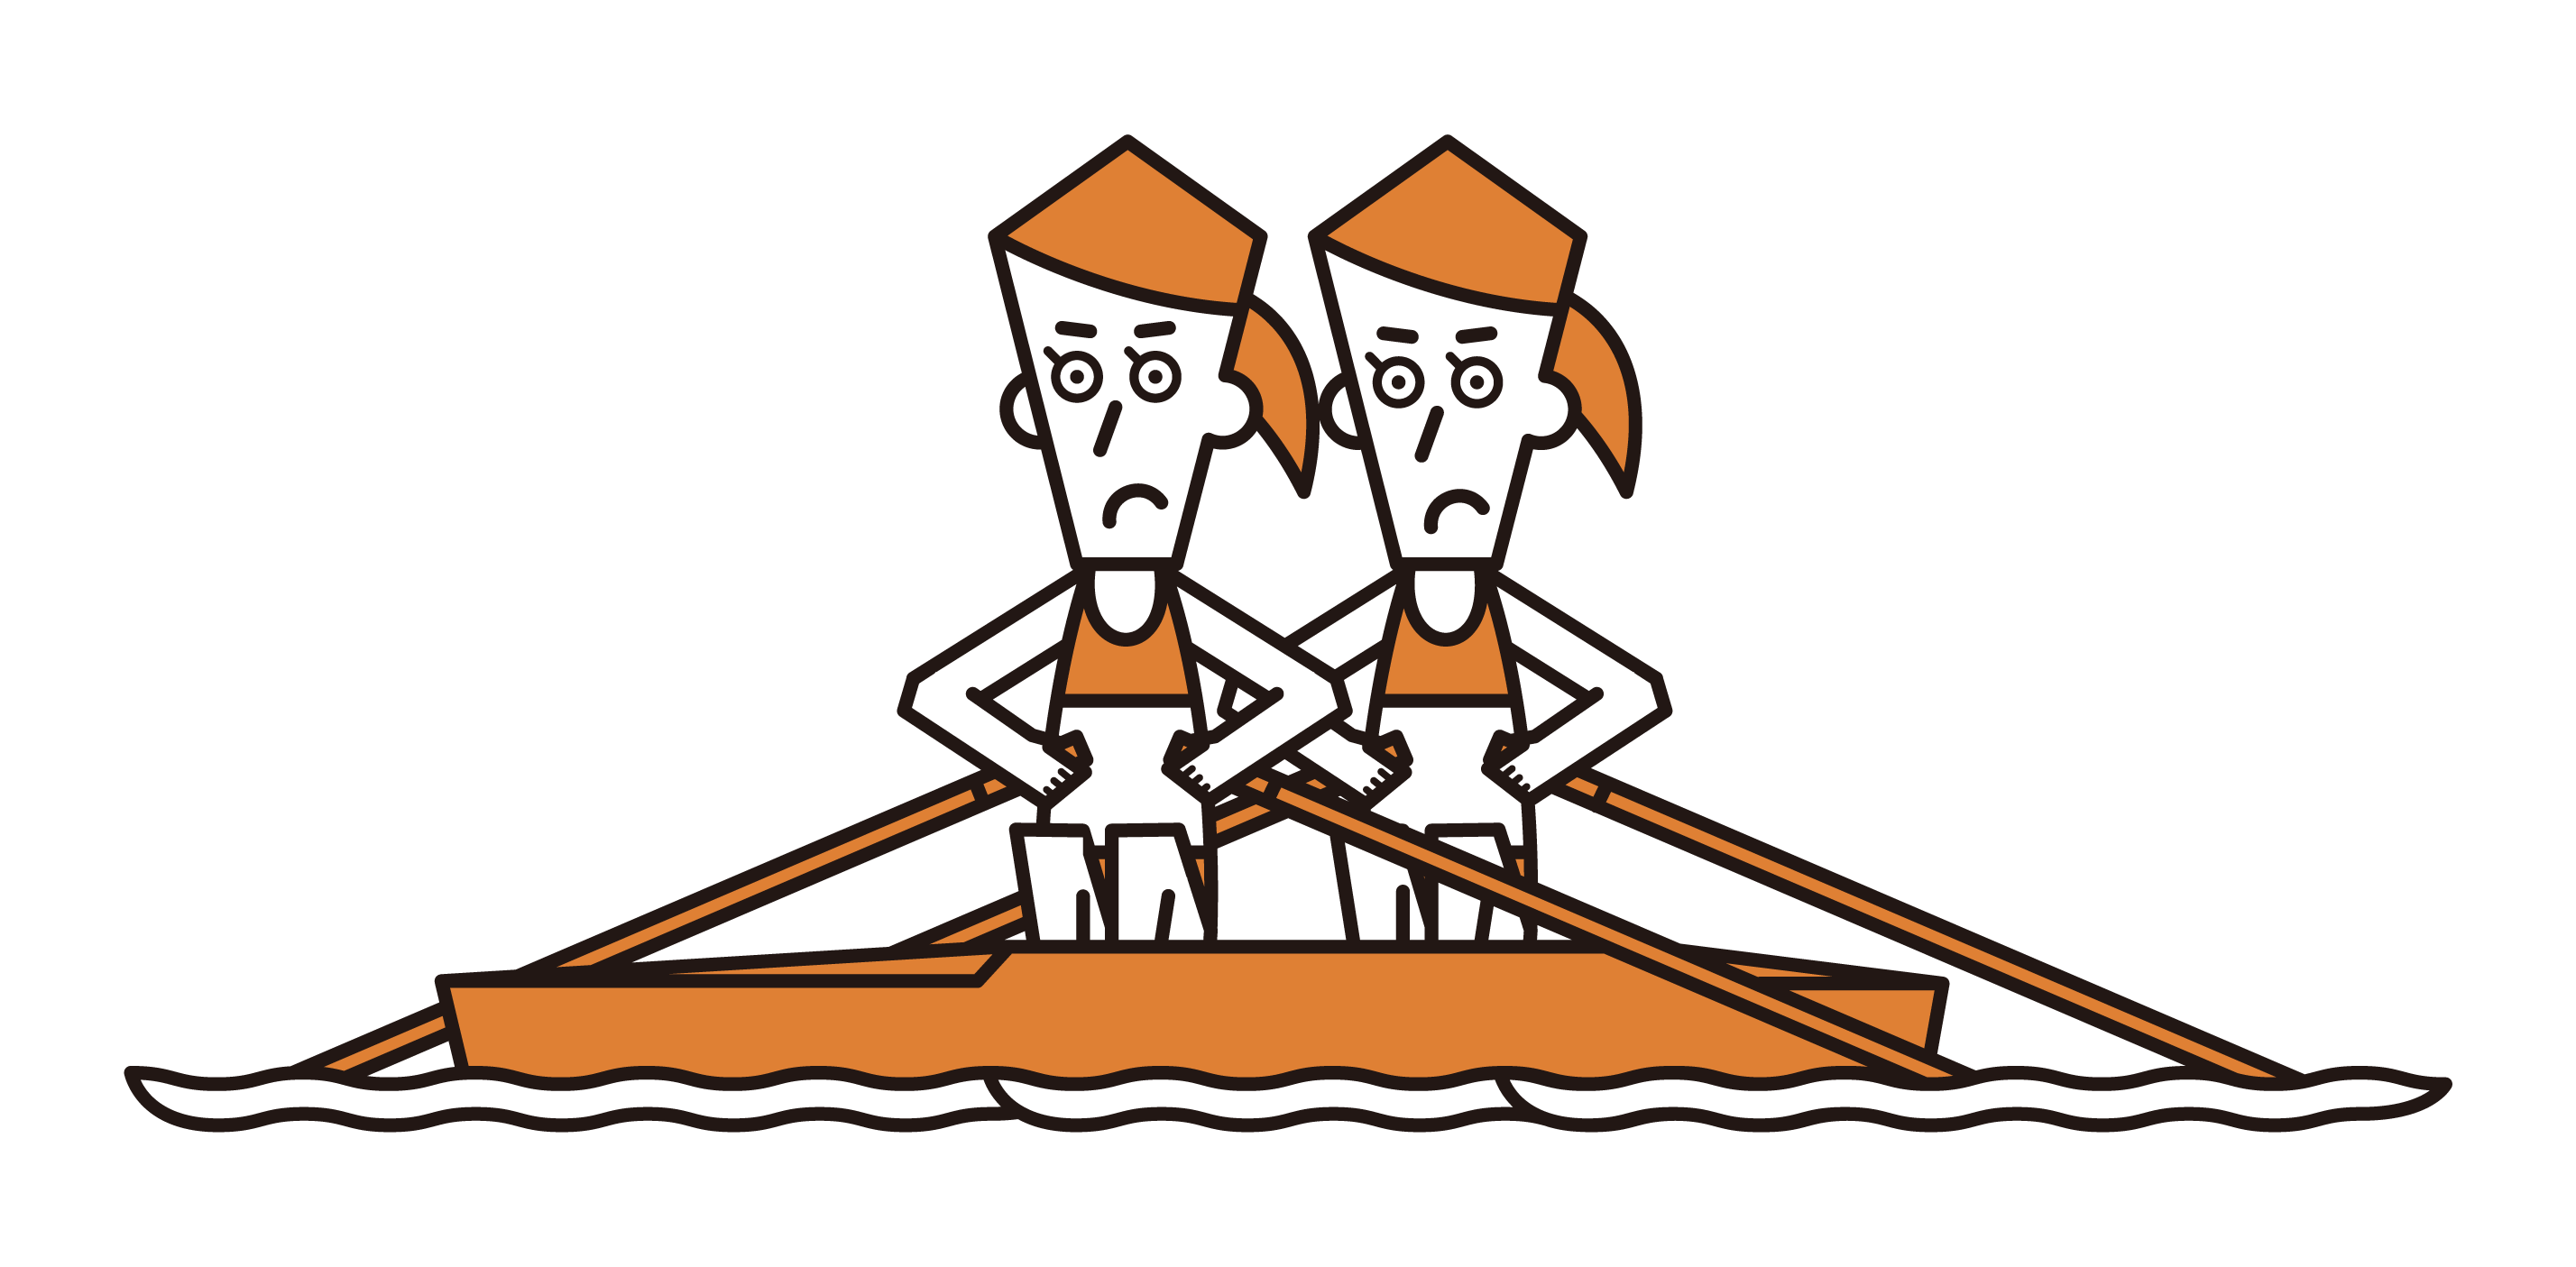 ボート競技（ダブルスカル）の選手たち（女性）のイラスト